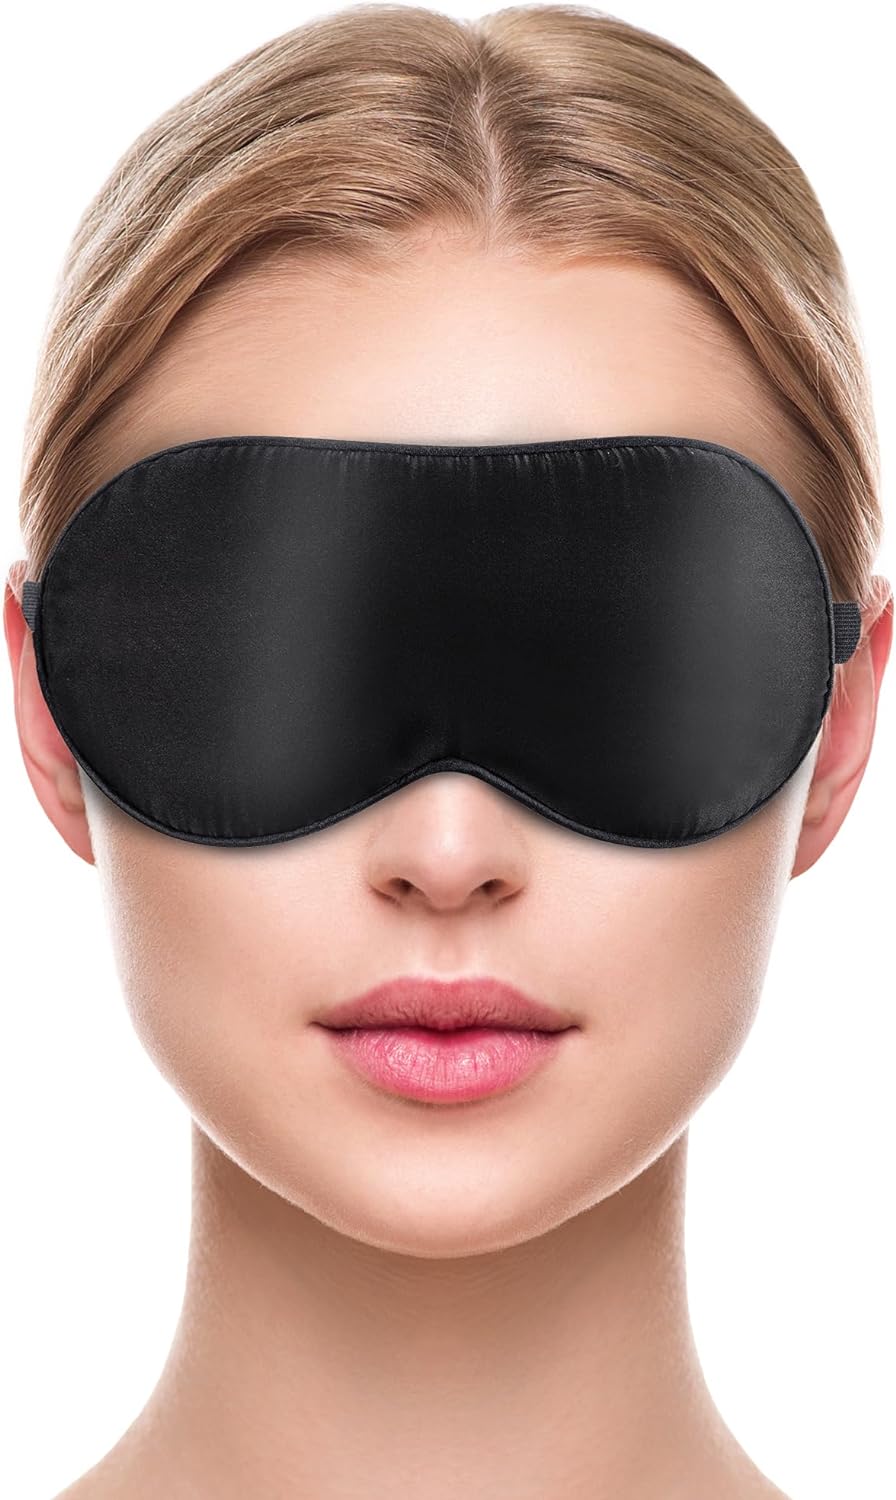 liebesfreunde® Augenmaske aus 100% echter Seide - bequem & weich - Schlafmaske für Frauen und Männer - Augenbinde, schwarz